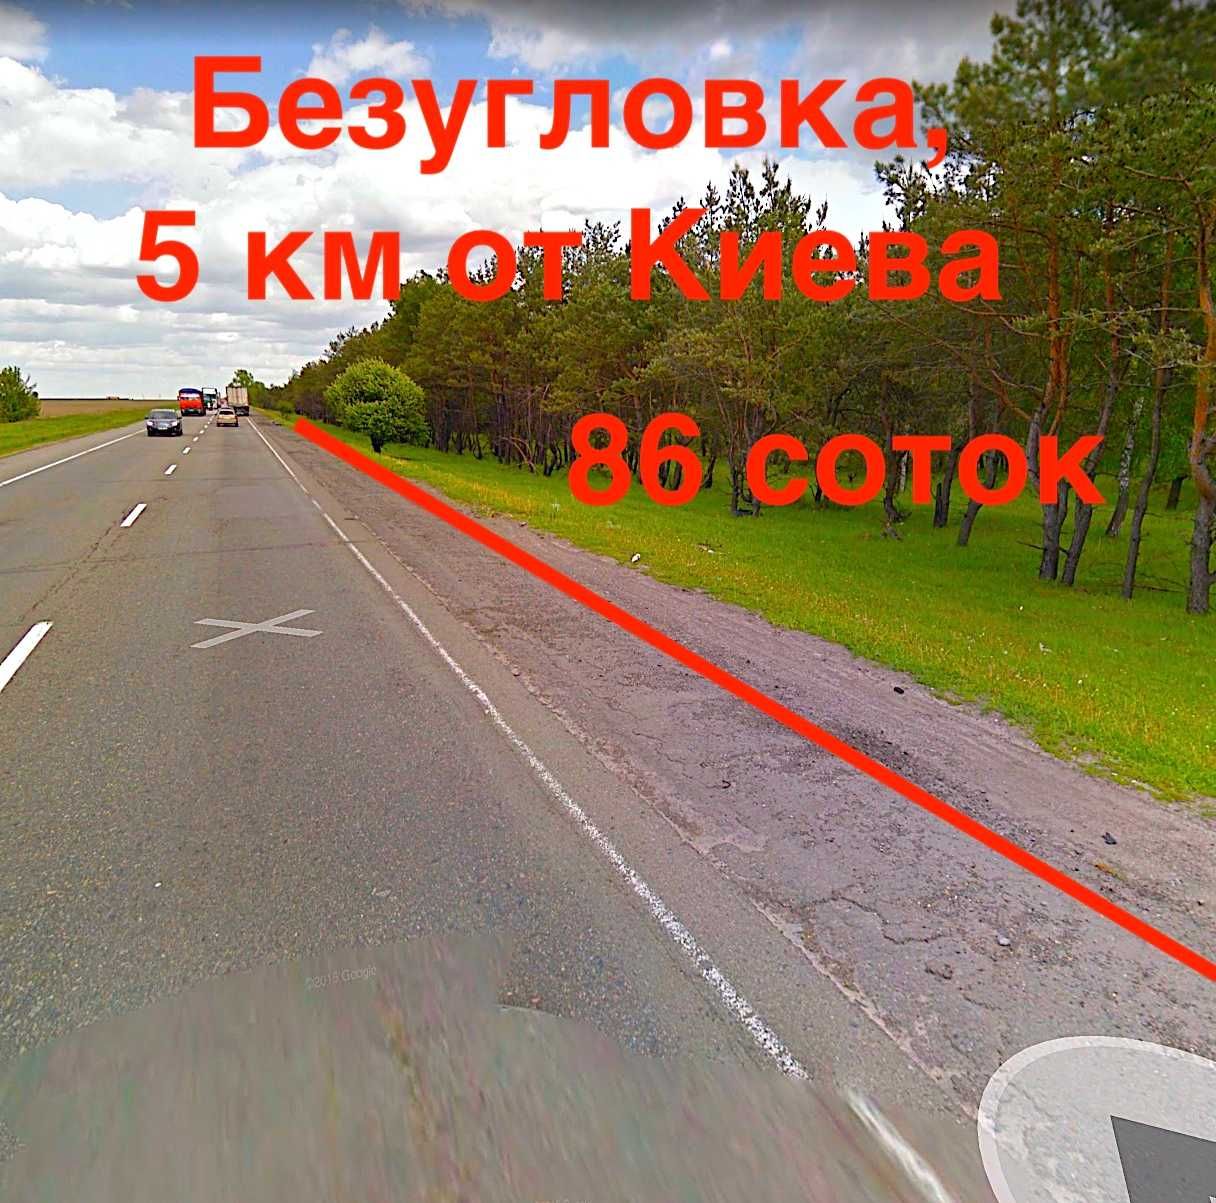 Ділянка під АЗС, авто сервіс вздовж траси за 5 км від Києва